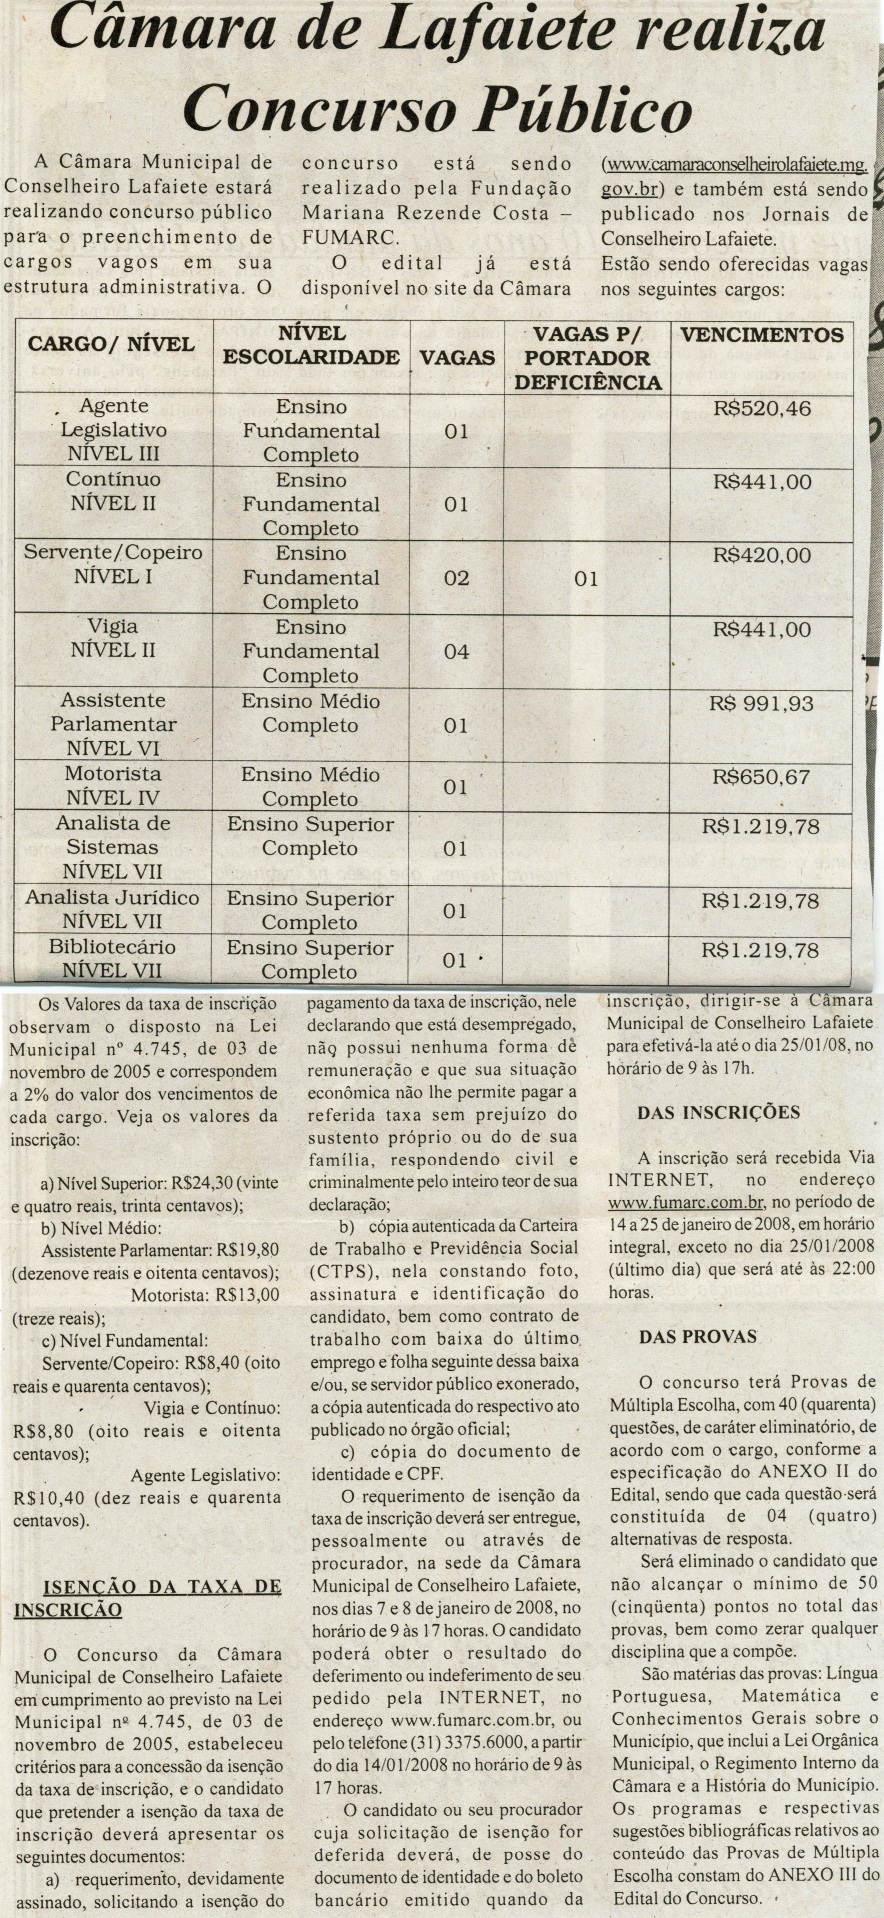 Câmara de Lafaiete realiza Concurso Público. Folha Livre, Conselheiro Lafaiete, 29 dez. 2007, 494 edª,p. 8.